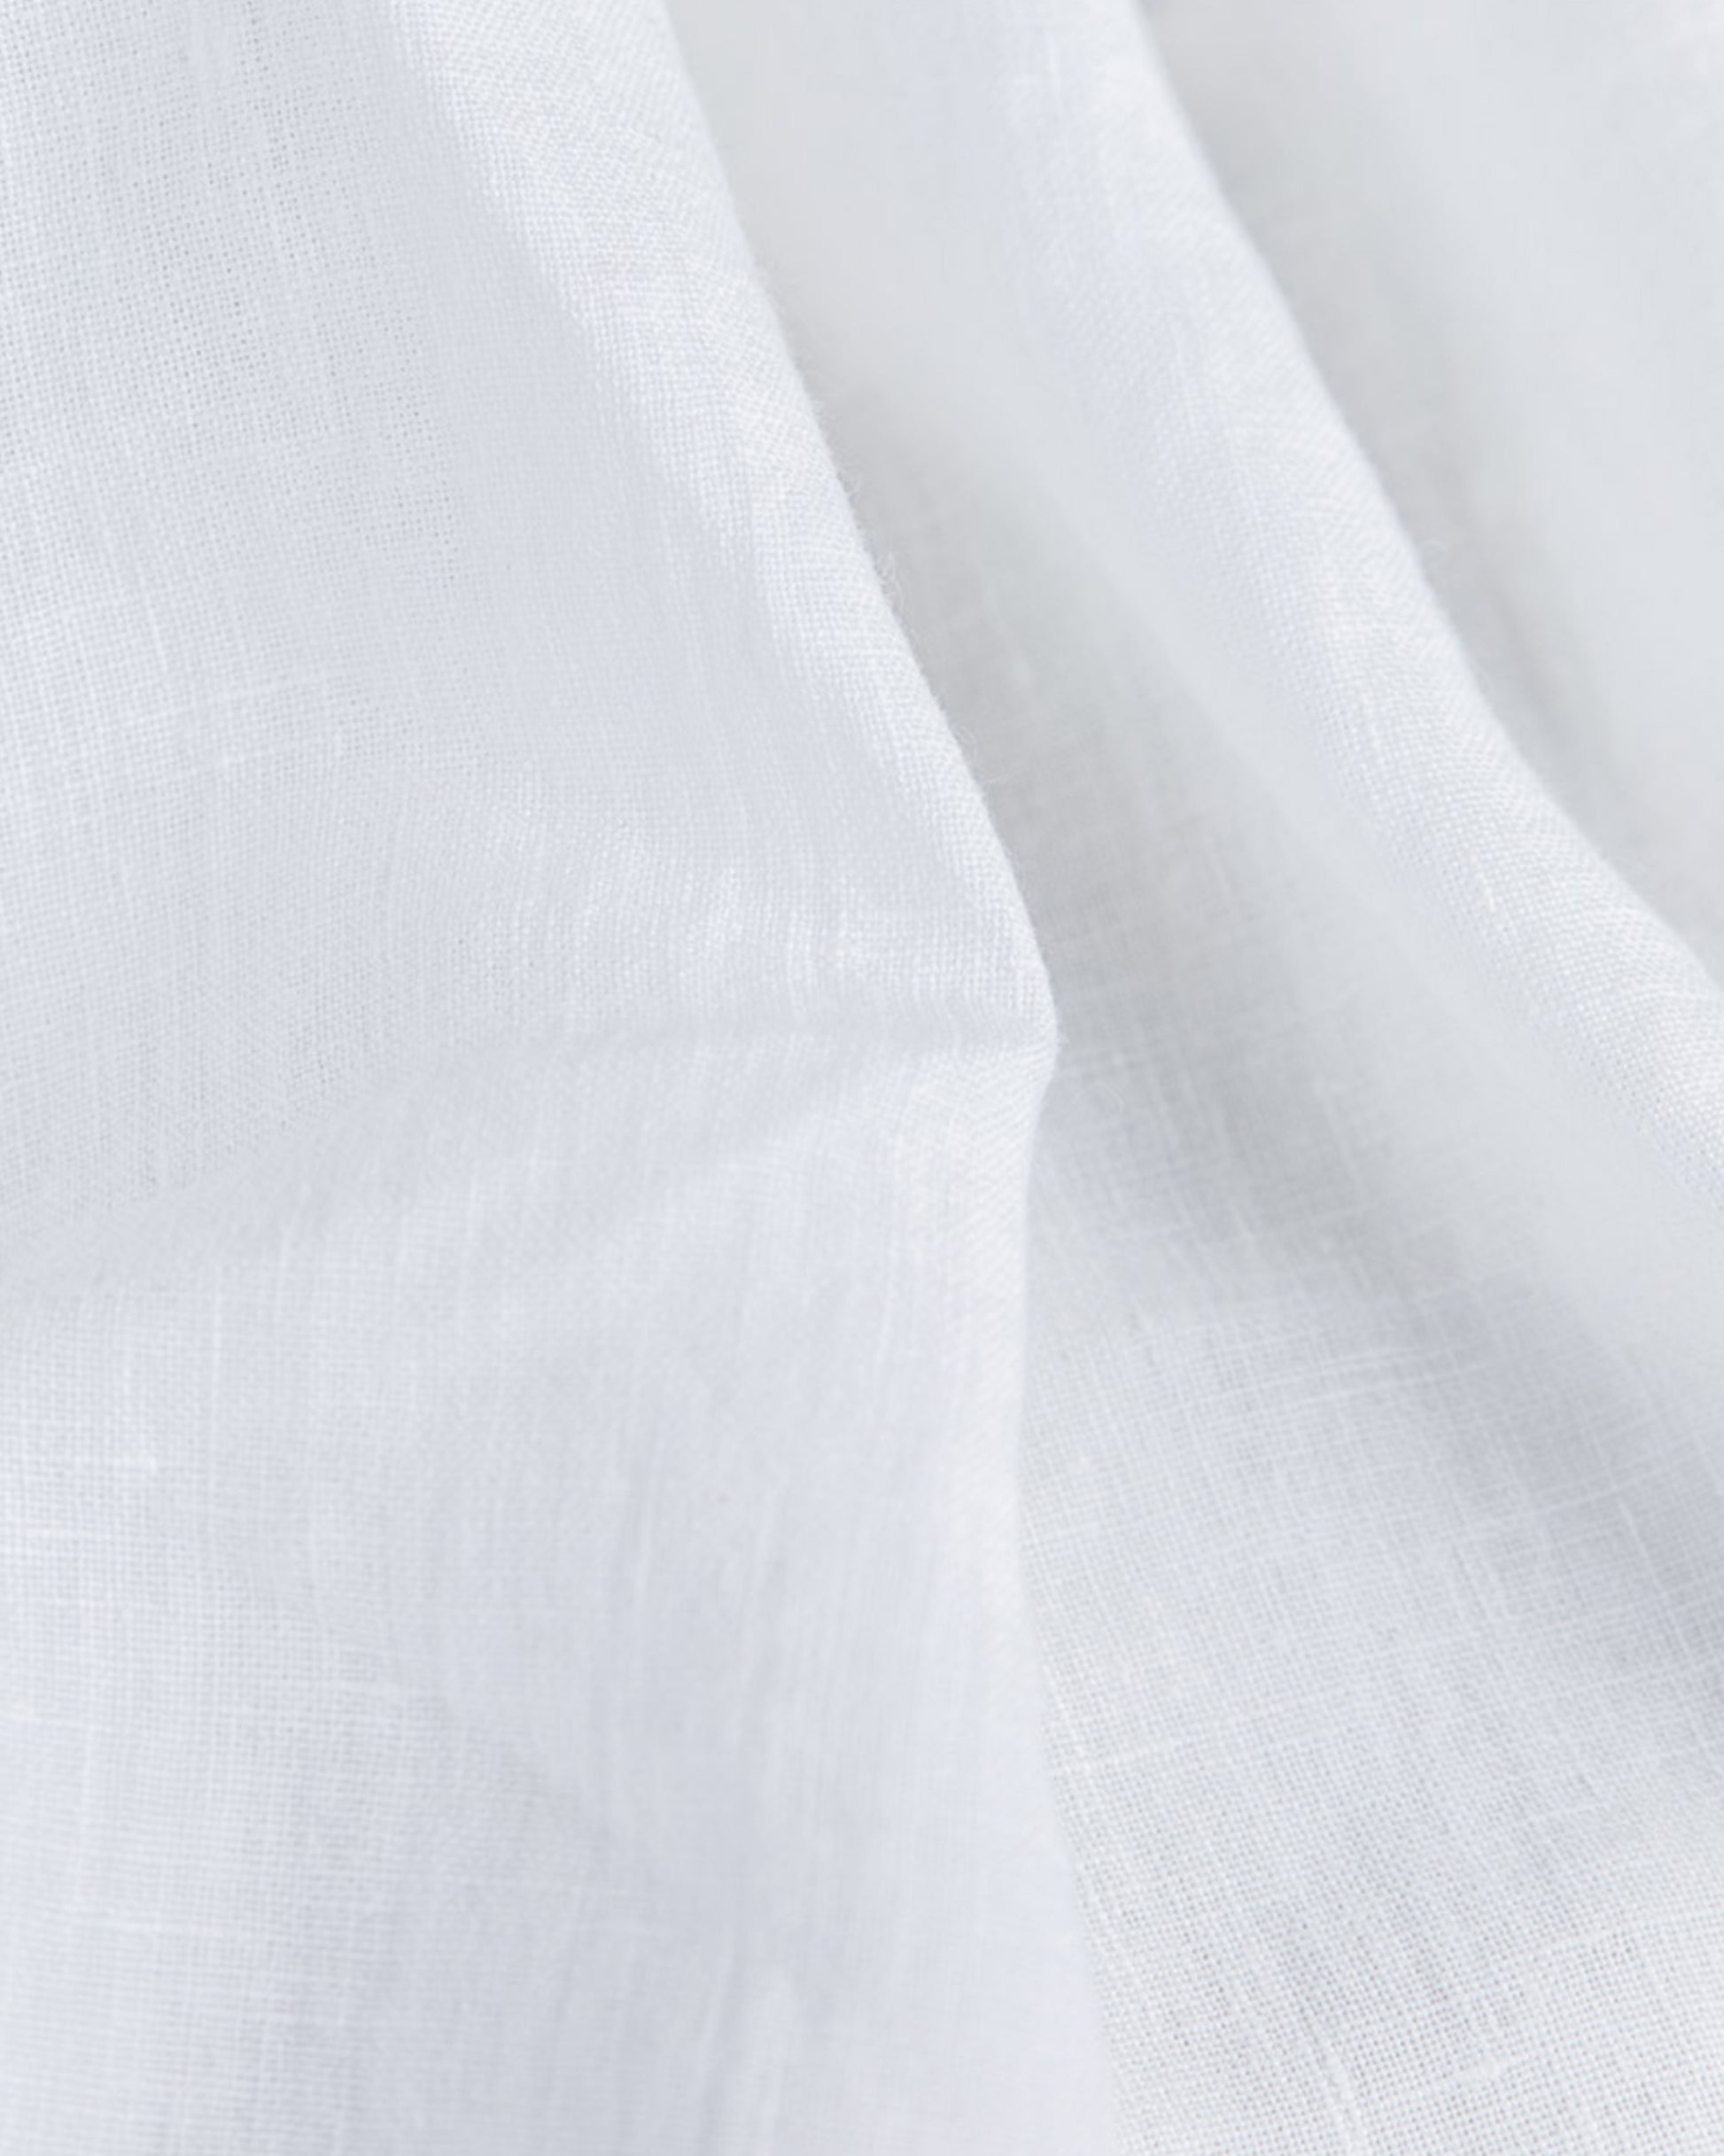 White linen napkin set of 2 - MagicLinen